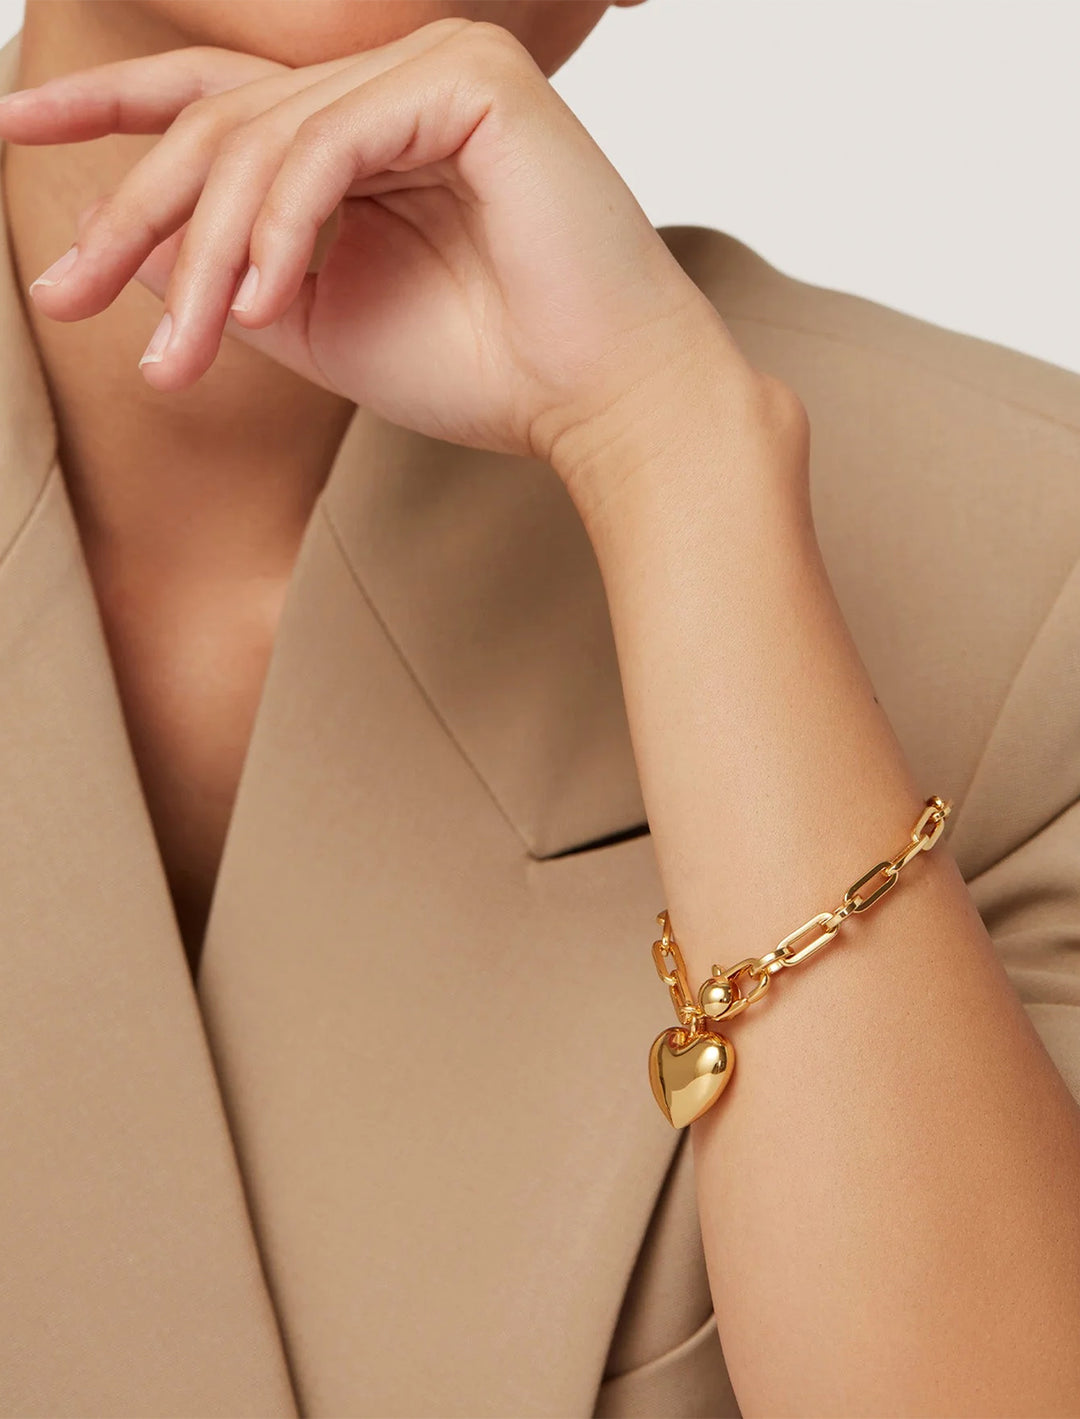 Model wearing Jenny Bird's puffy heart chain bracelt in gold.